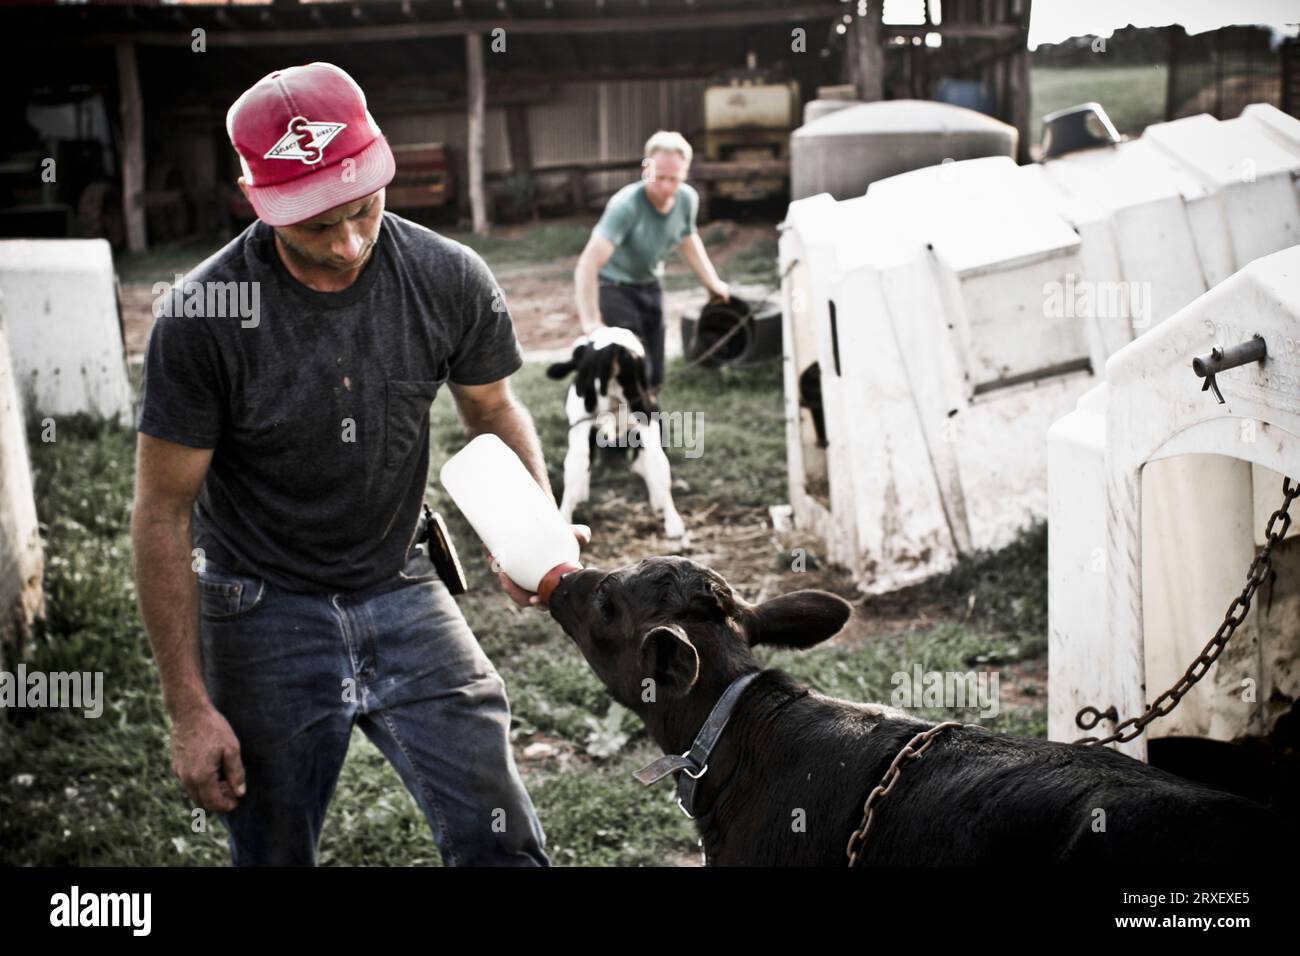 Un homme nourrit un veau avec une bouteille de lait tandis que son frère s'occupe d'un autre veau dans leur ferme familiale à Keymar, dans le Maryland. Banque D'Images